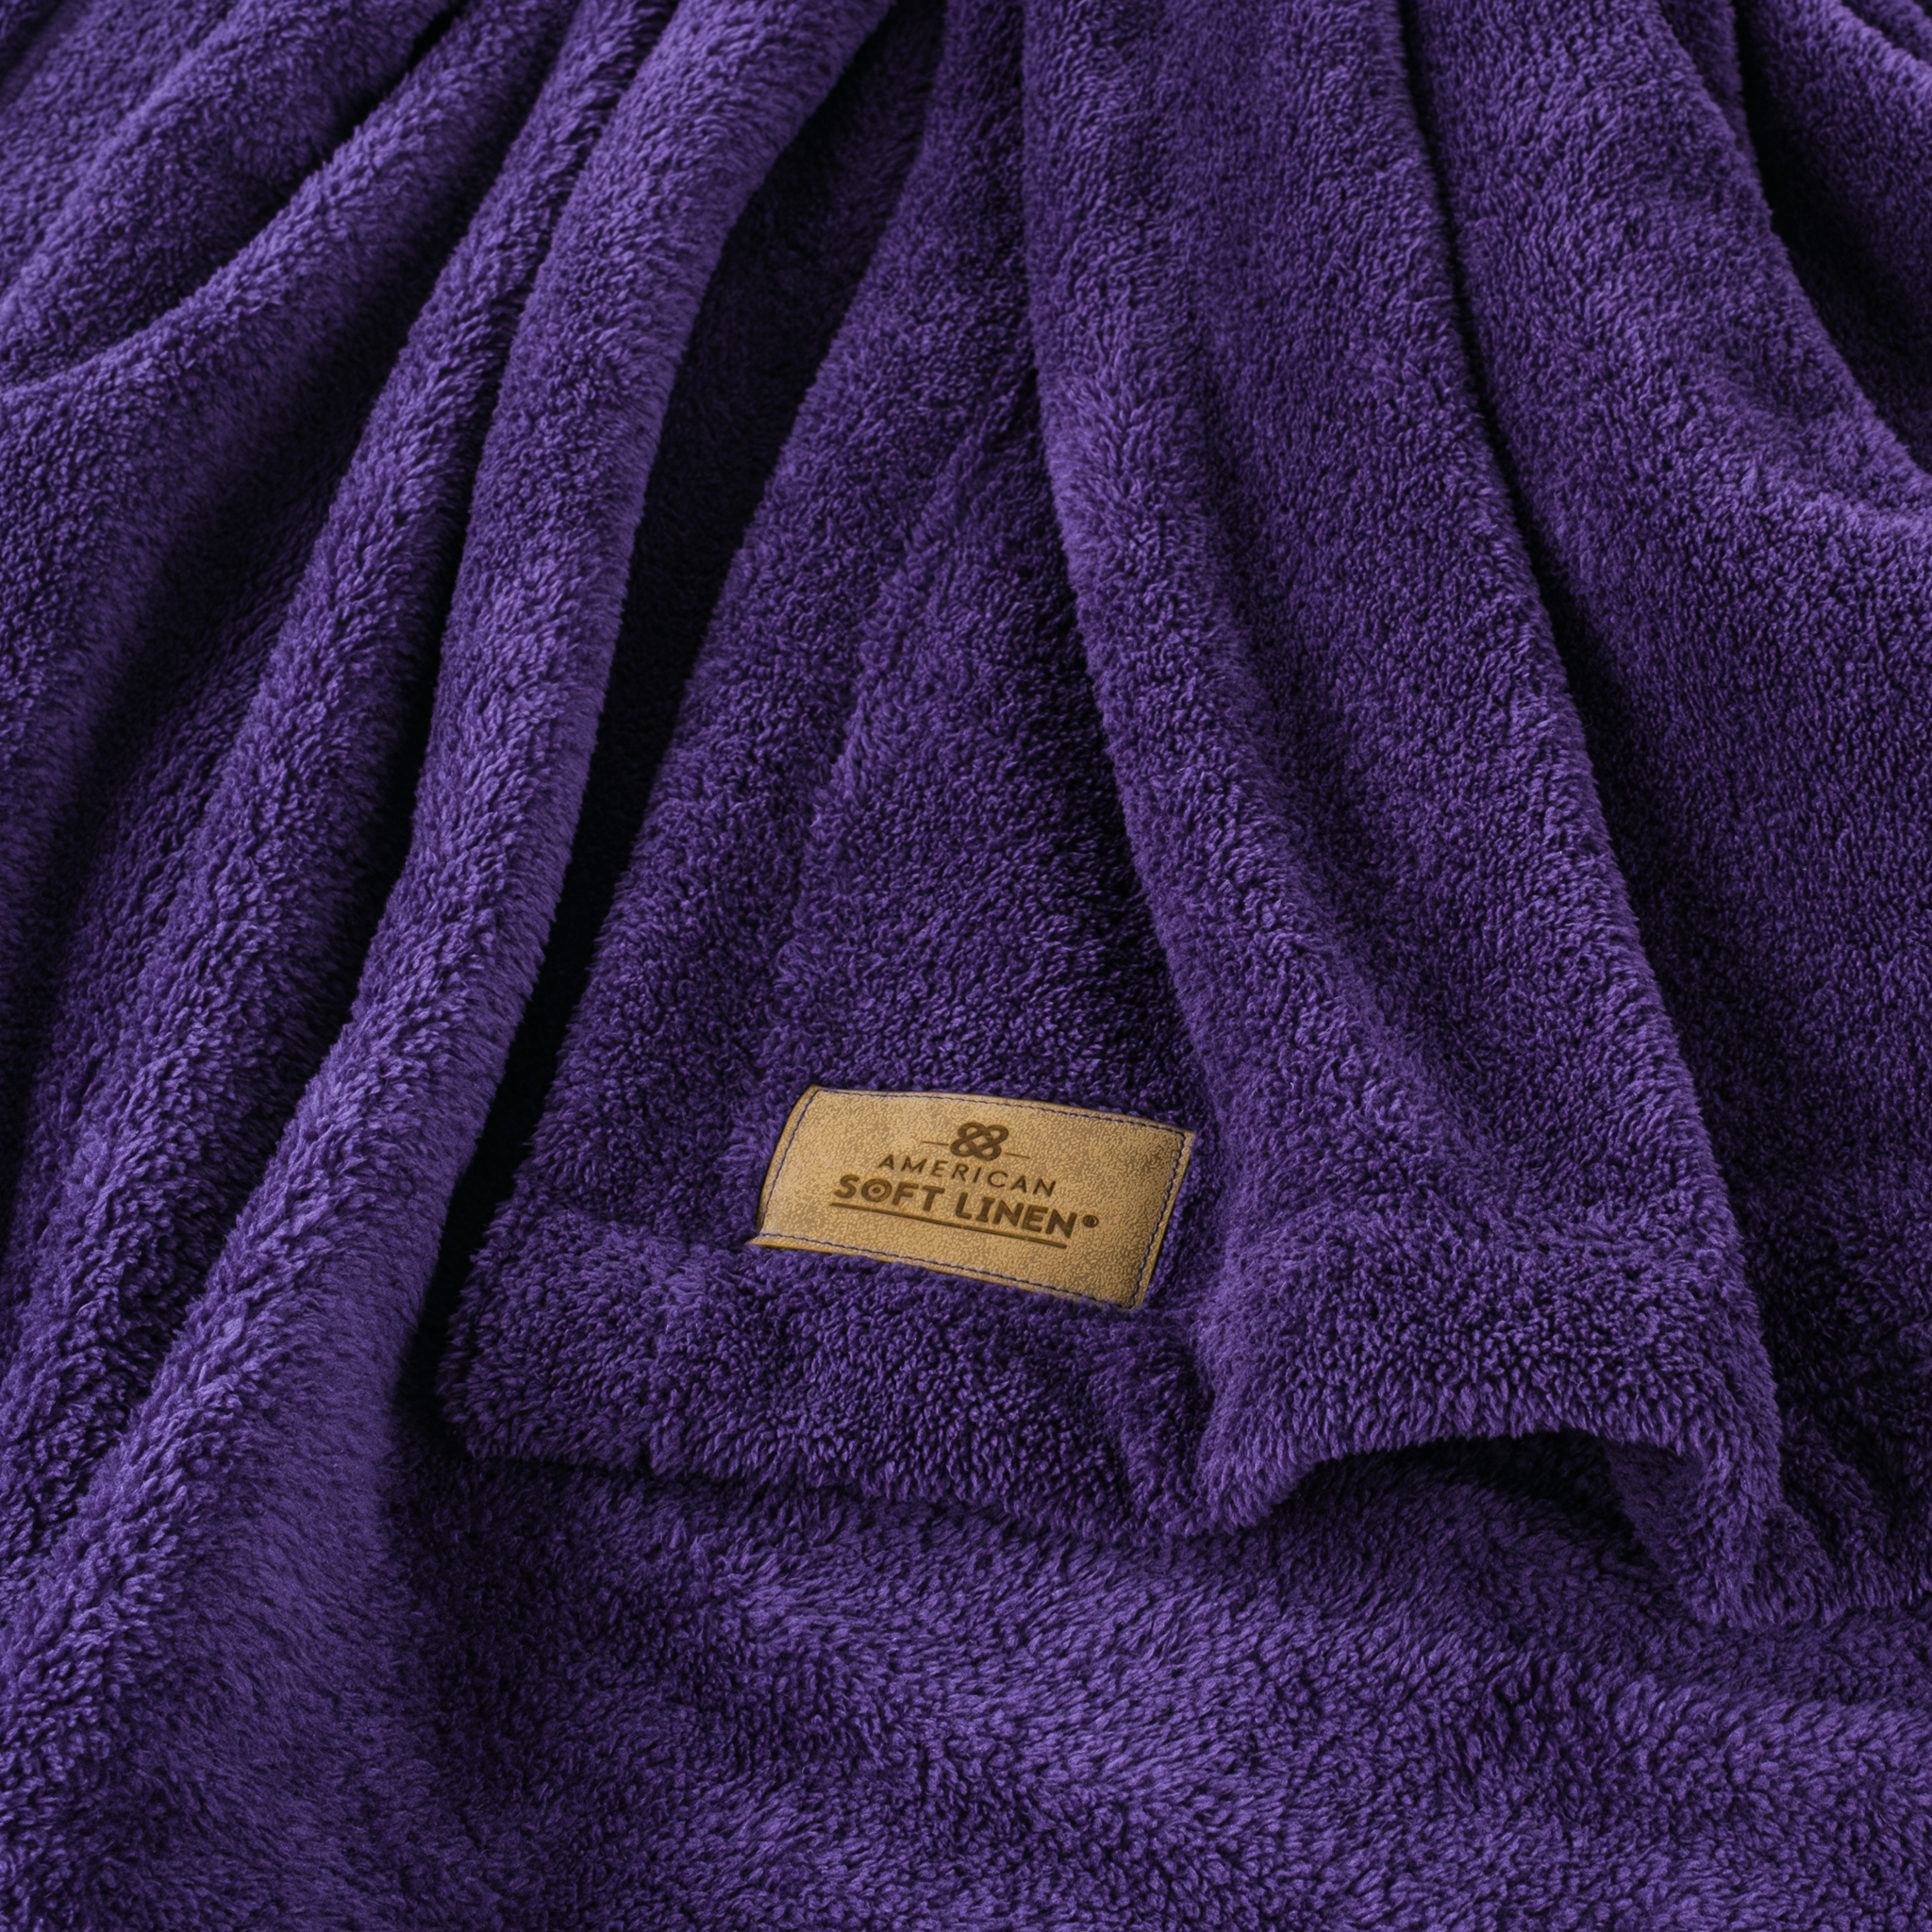 American Soft Linen - Bedding Fleece Blanket - Queen Size 85x90 inches - Purple - 4